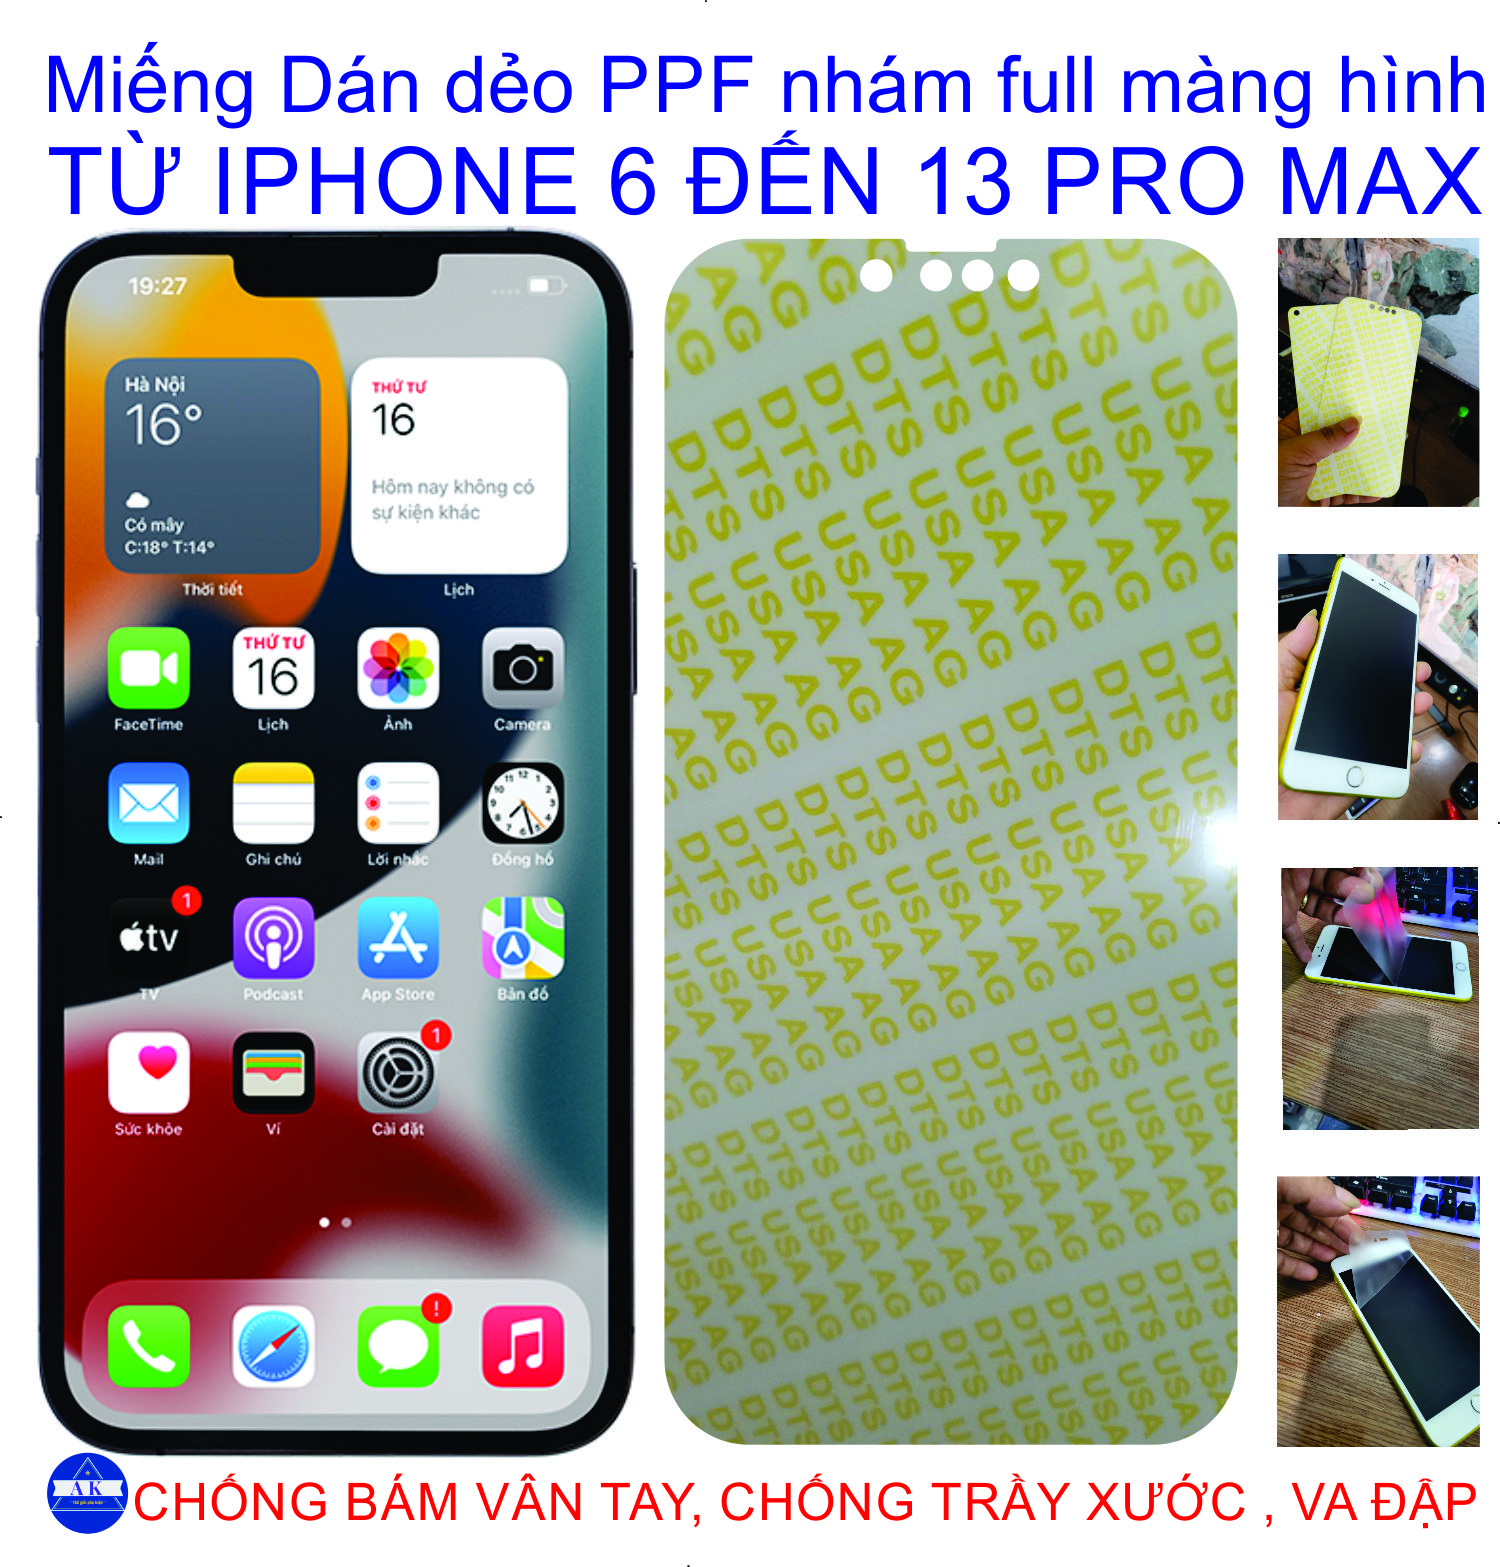 Miếng Dán Dẻo PPF nhám Full màng hình dành cho iphone 6 đến 13pro max, chống bám vân tay, trầy xước